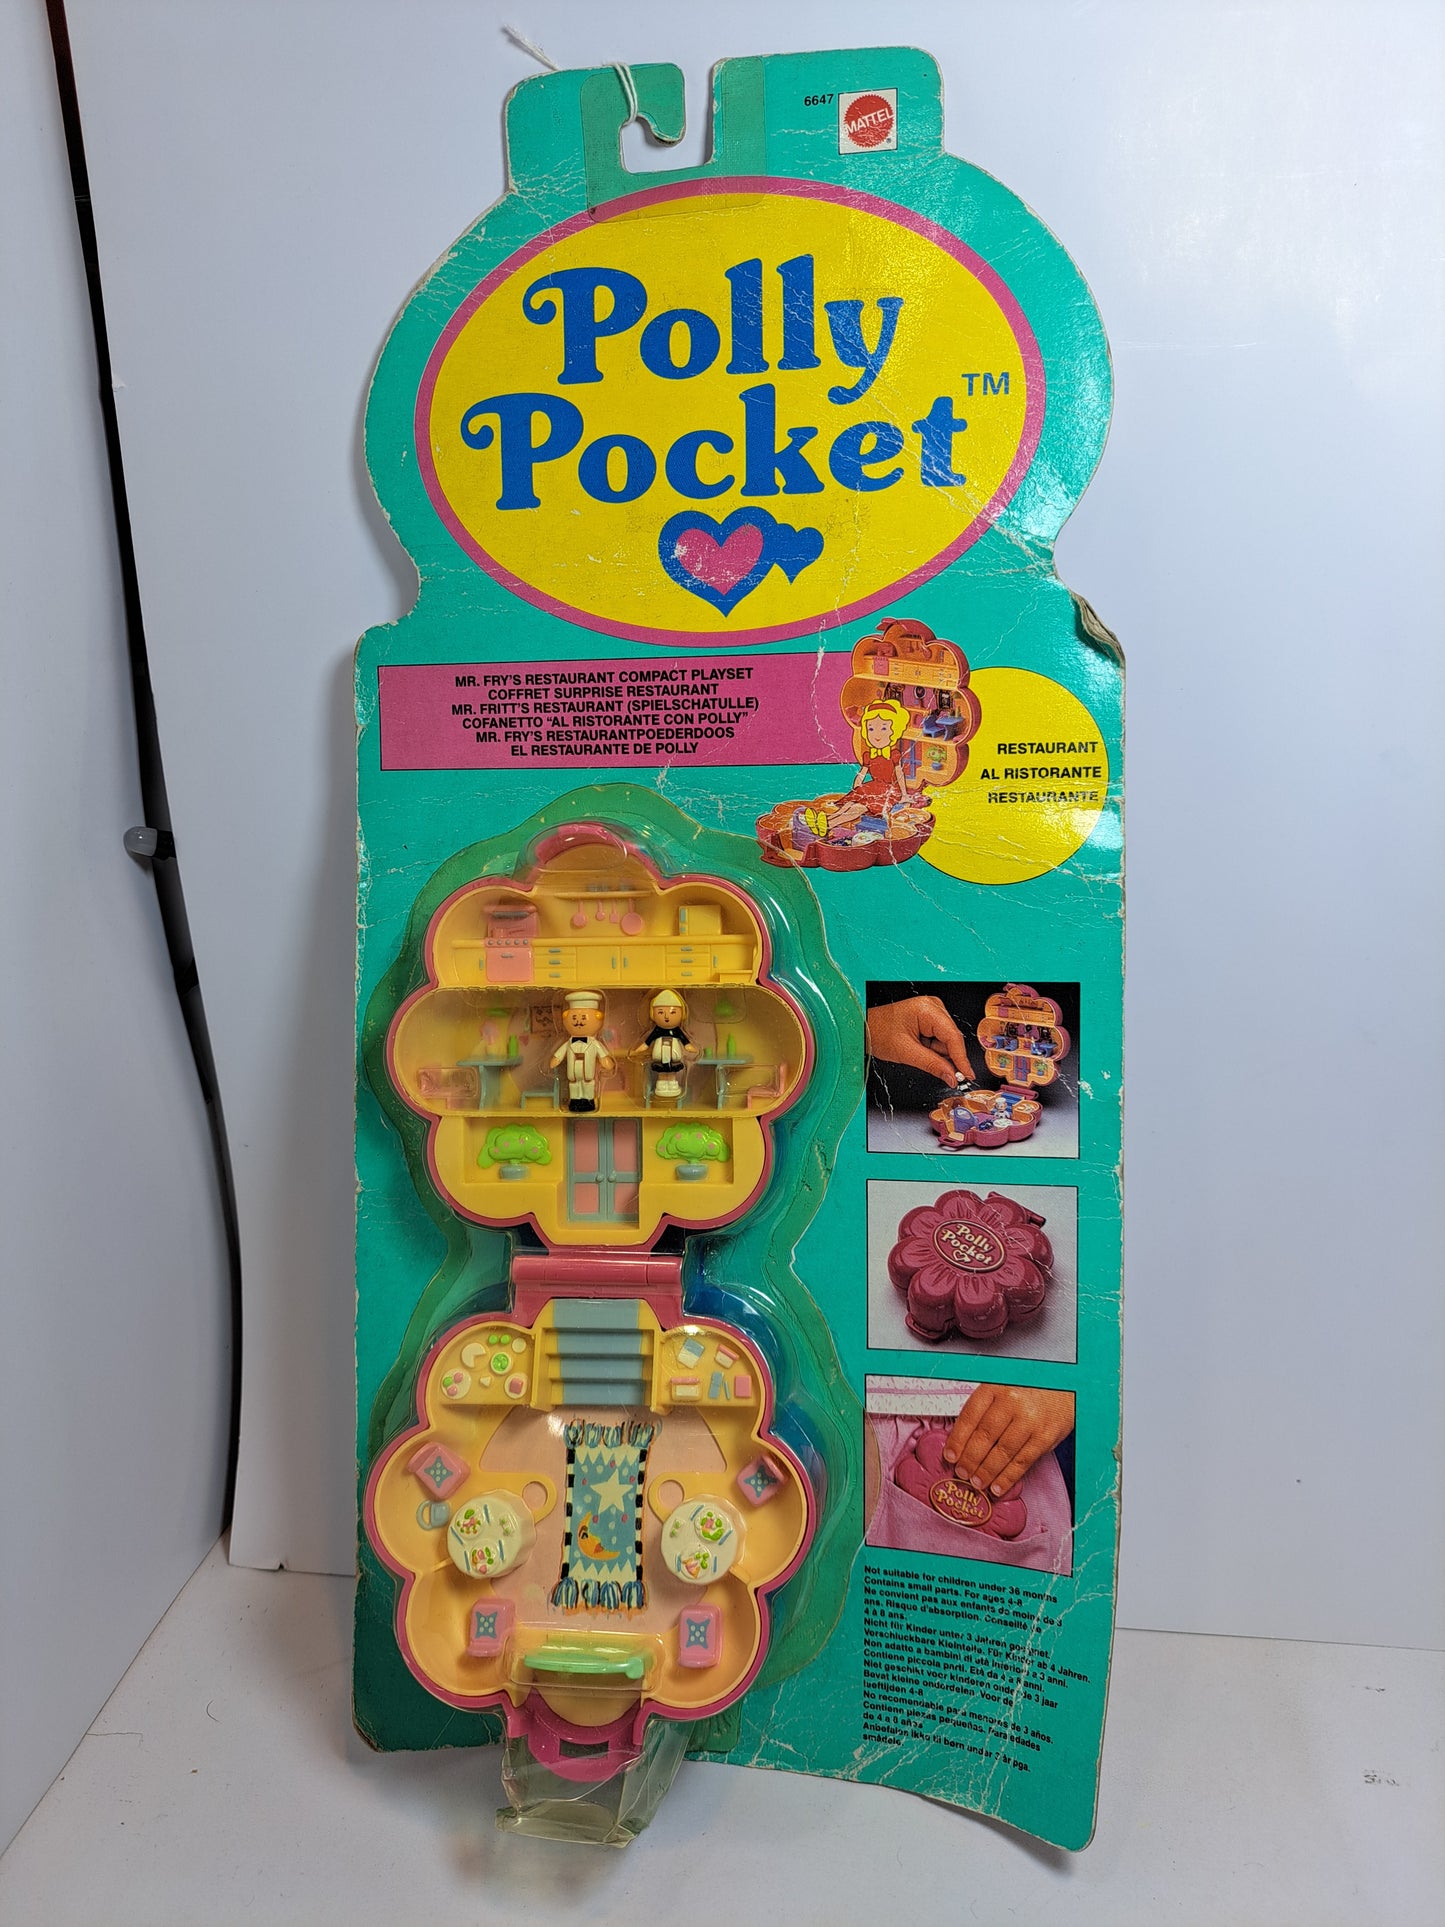 Polly pocket Mr. Fry Restaurante de polly